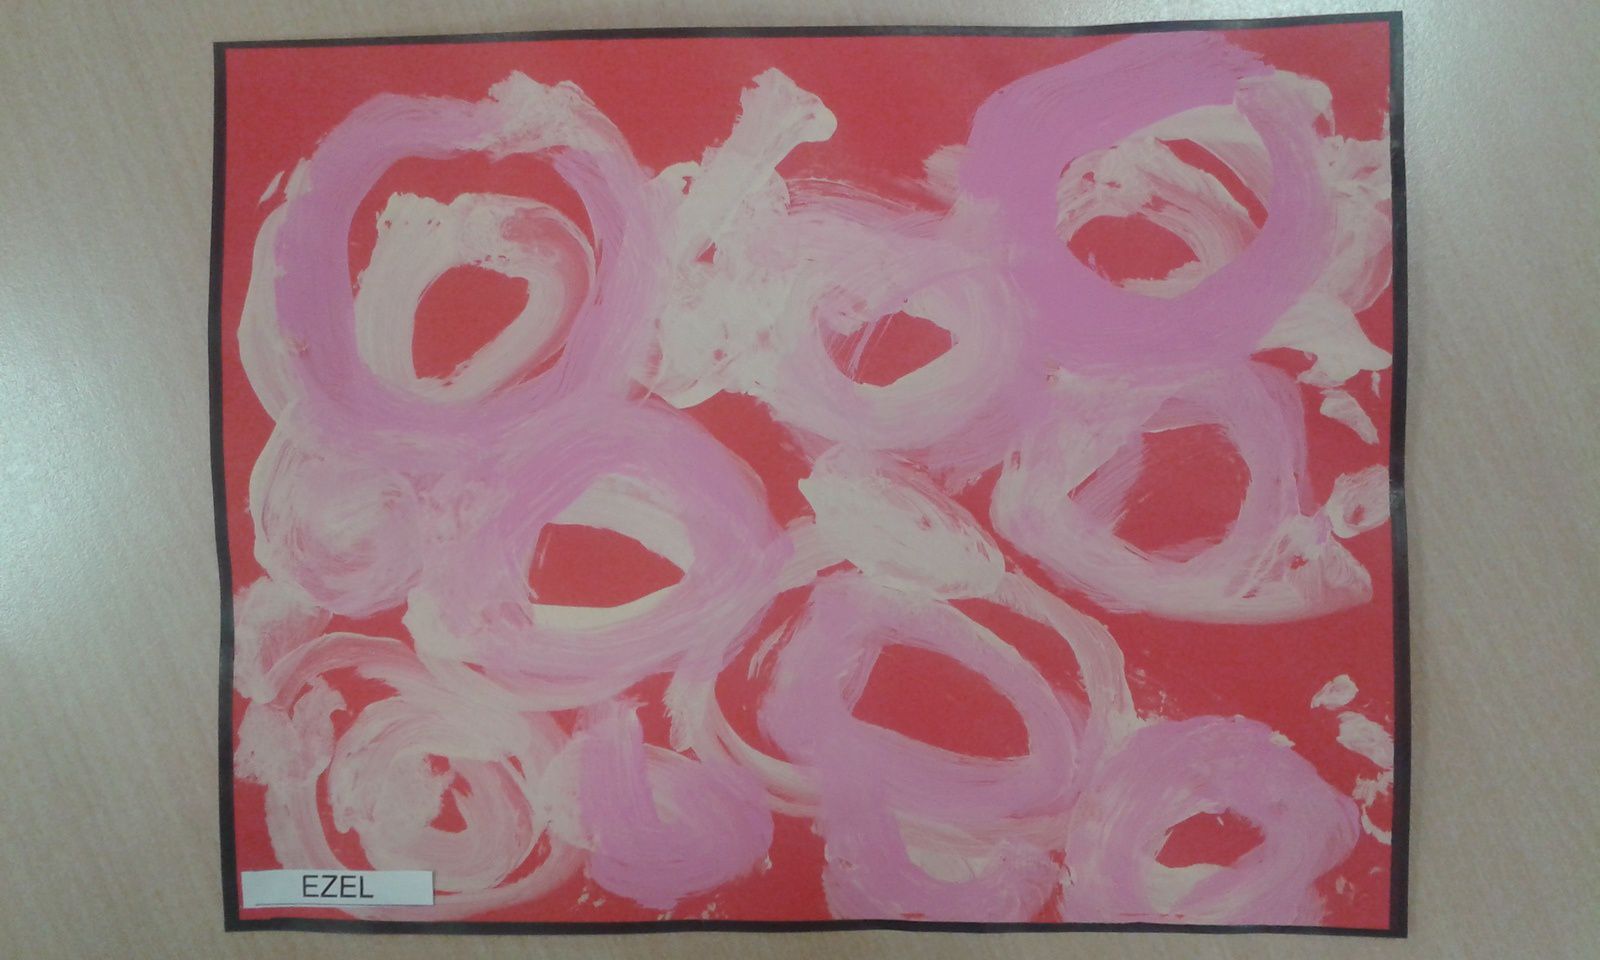 Peinture de ronds avec de la peinture rose pâle, blanche, rose bonbon, fuchsia, sur fond rouge.